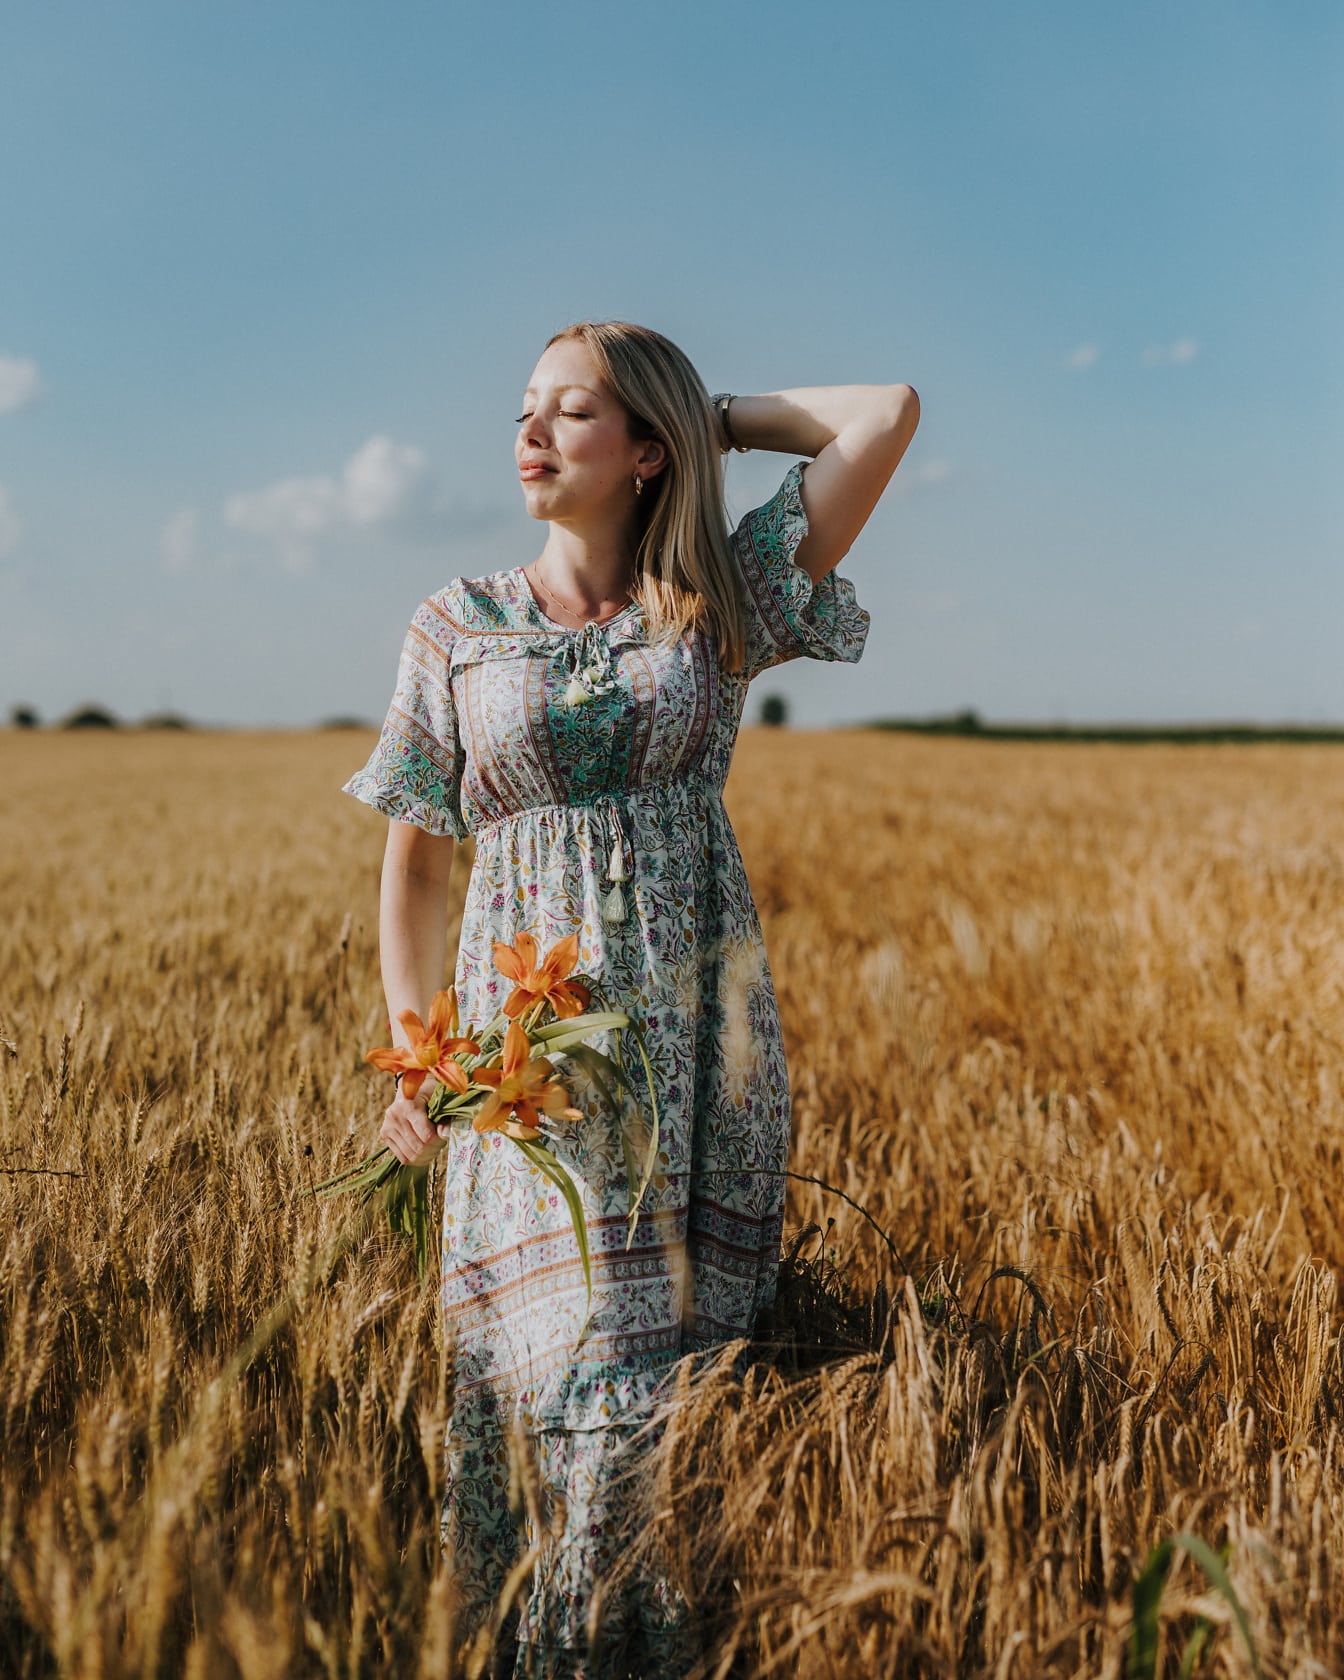 Portrét úžasne krásnej blondínky vo vidieckych šatách, ktorá drží kvety na pšeničnom poli v letnom období